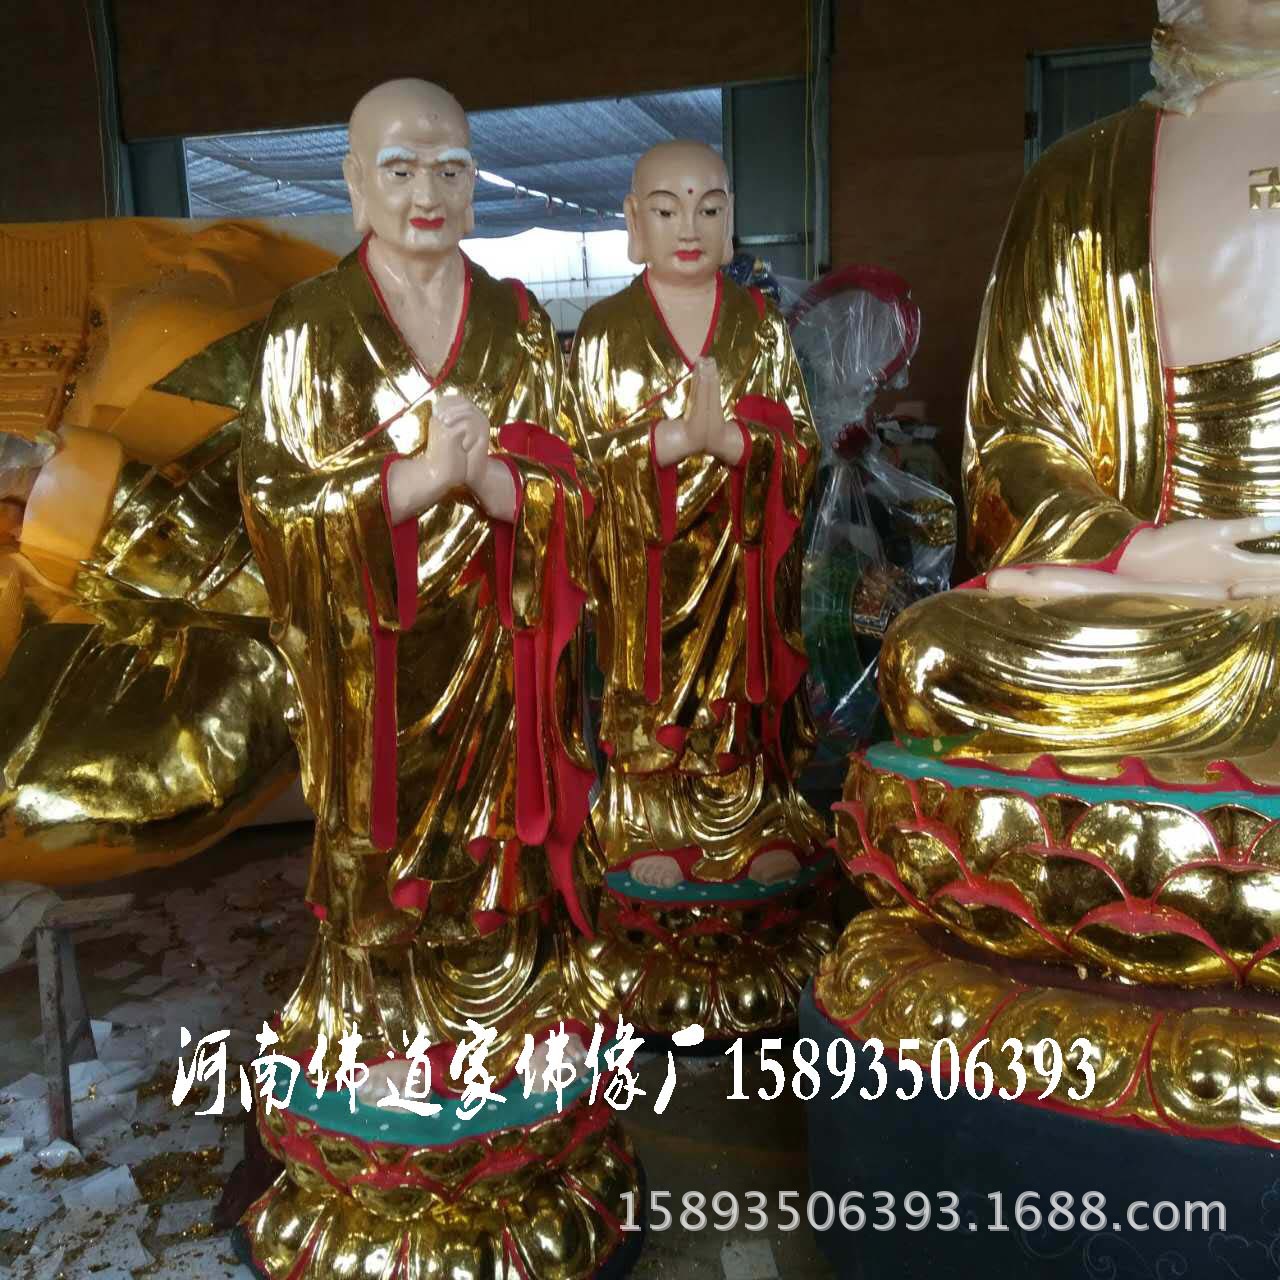 藏传佛教藏佛密宗佛像 百年传承供应佛教用品 河南大型佛像神像示例图2